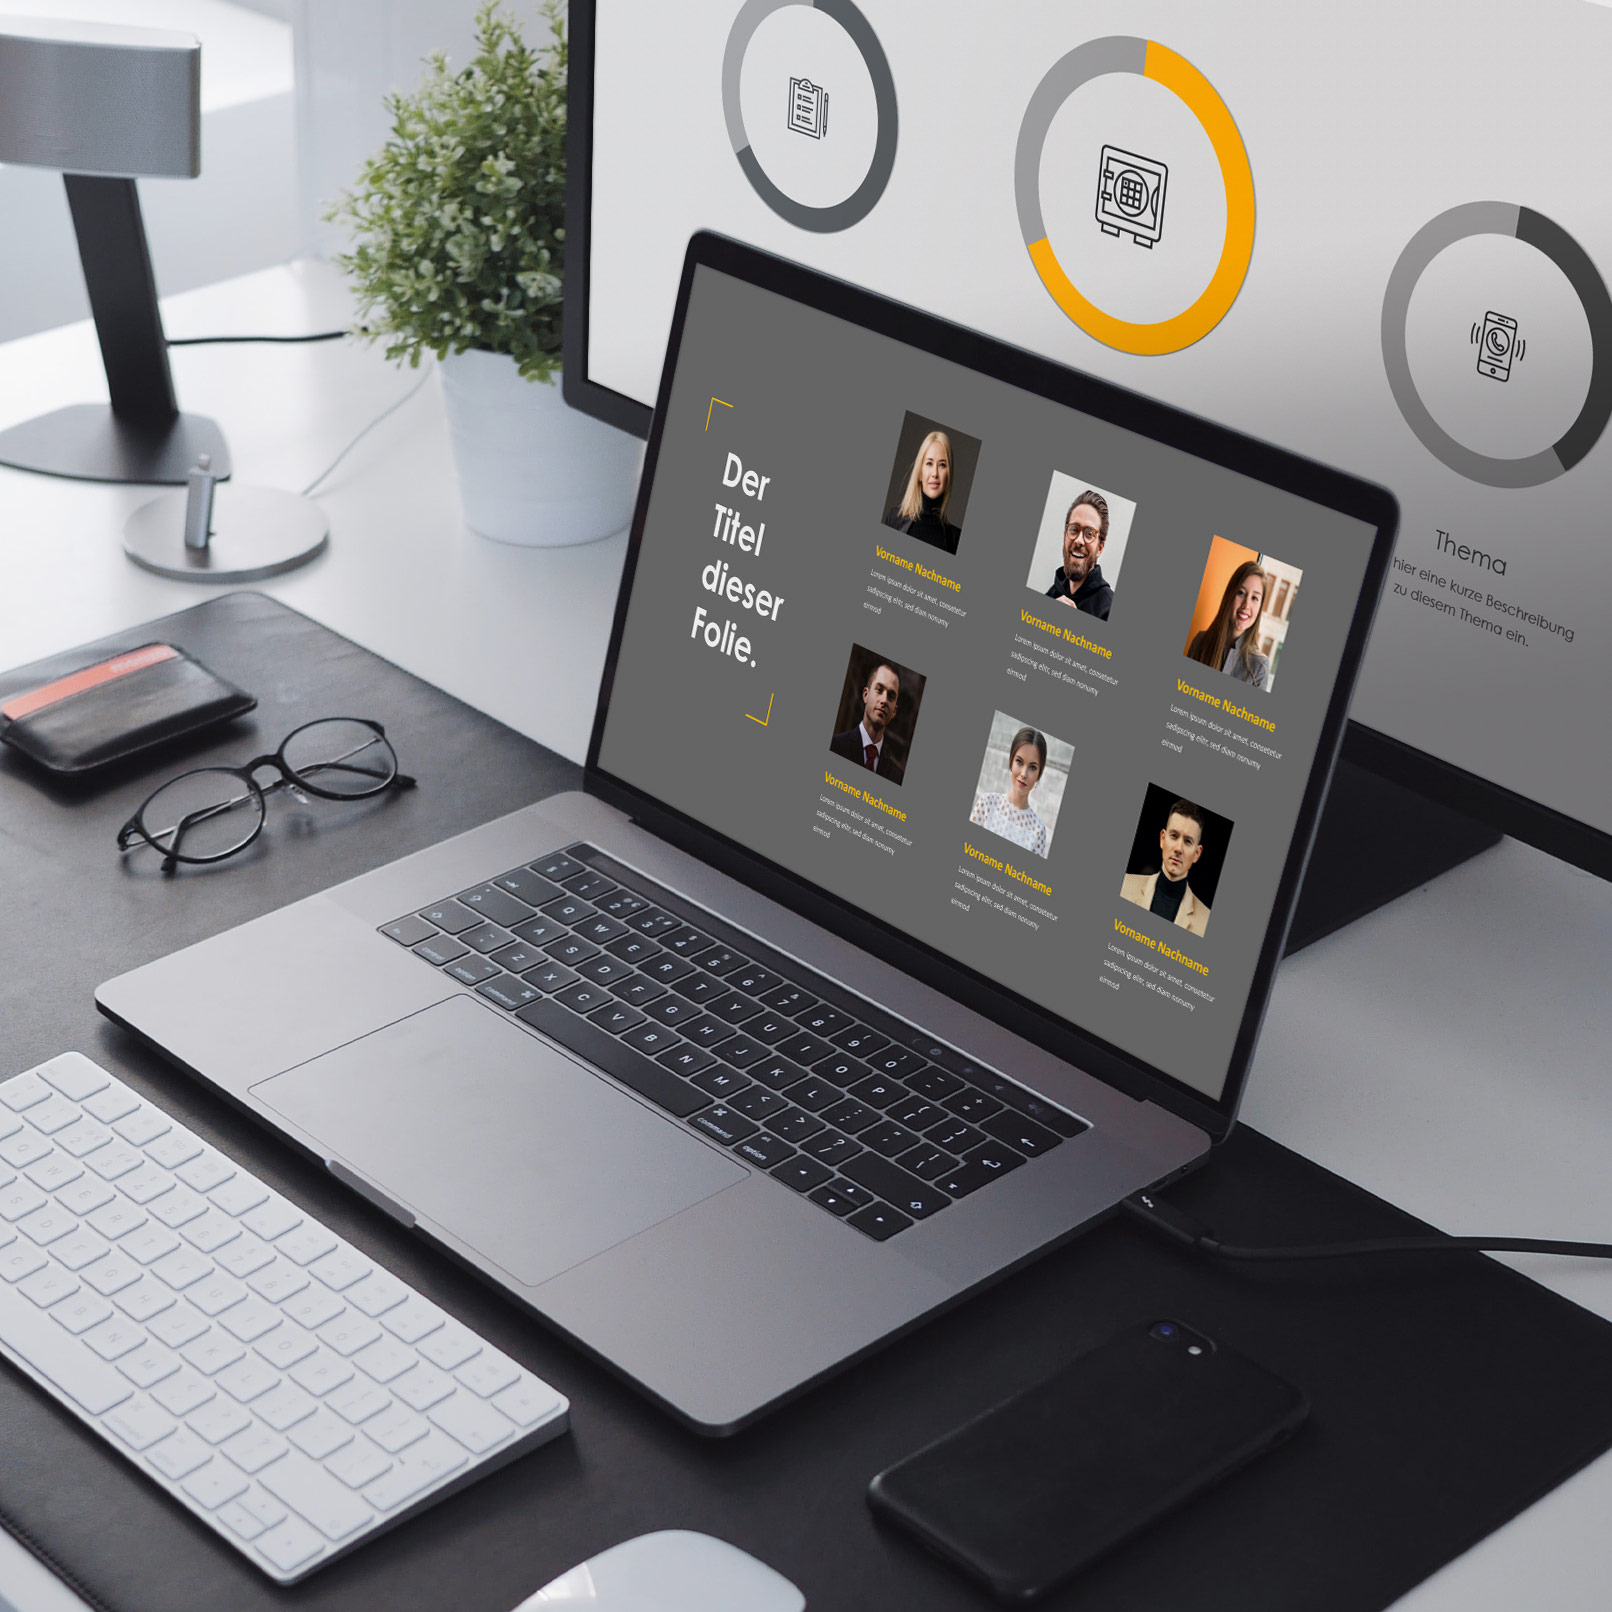 Folien für PowerPoint, Google Slides und Keynote auf einem Laptop und einem Monitor